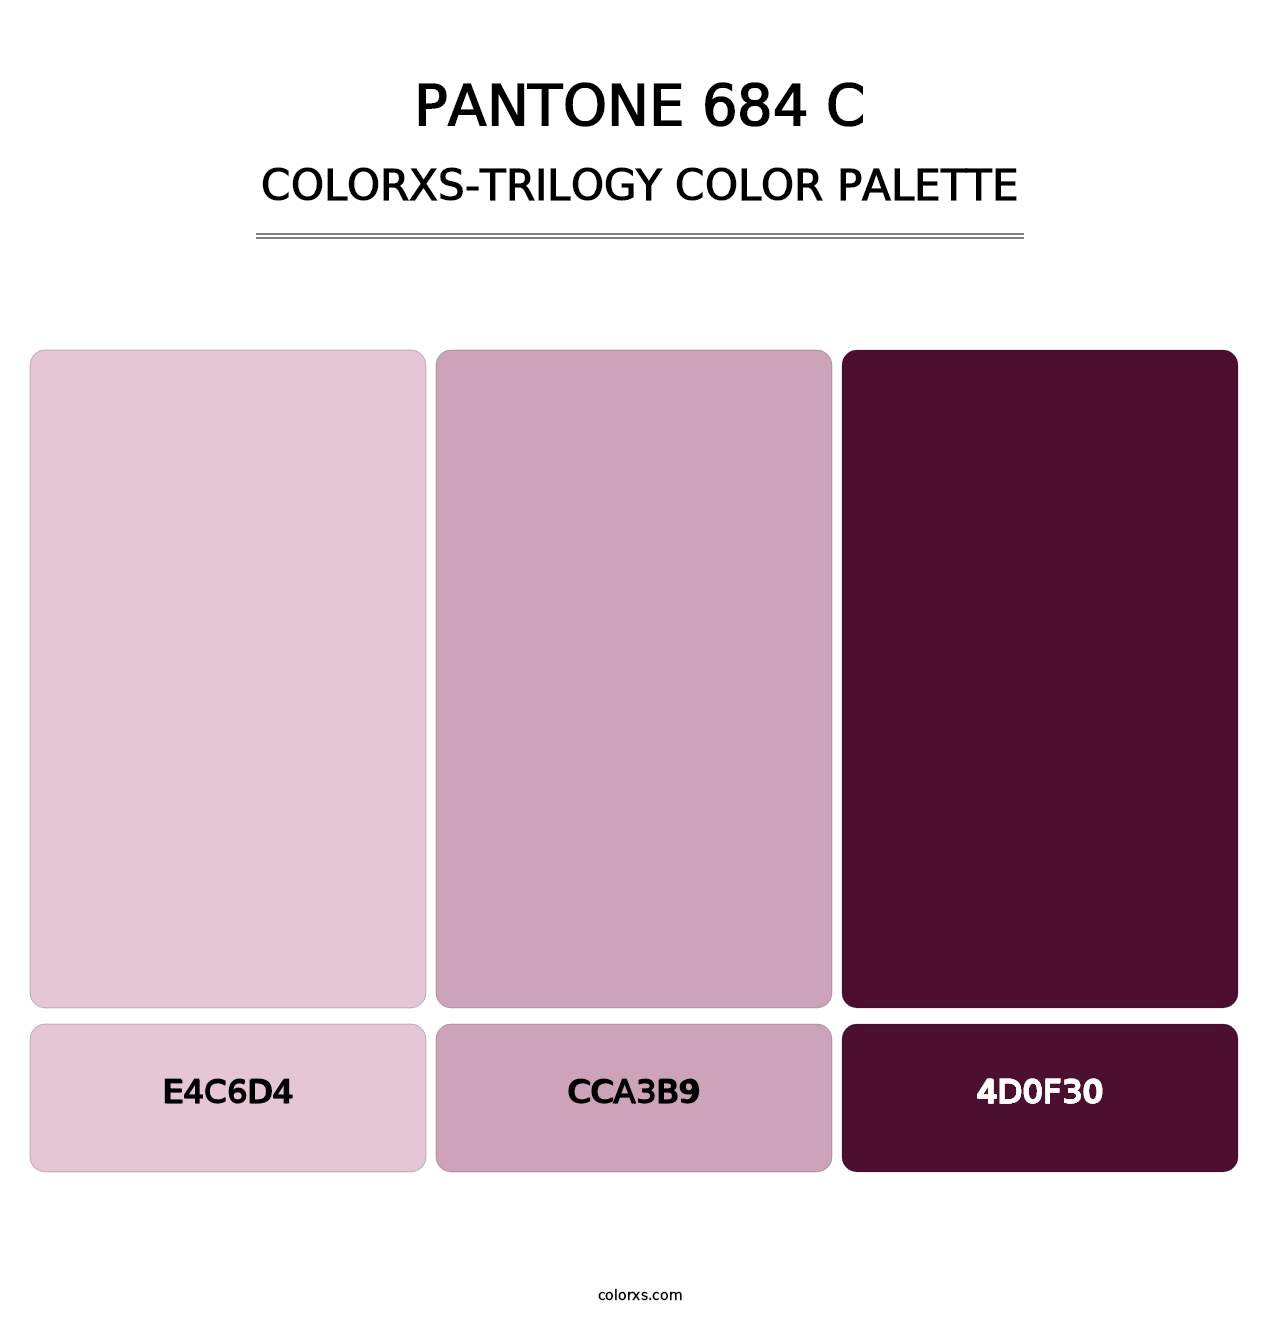 PANTONE 684 C - Colorxs Trilogy Palette